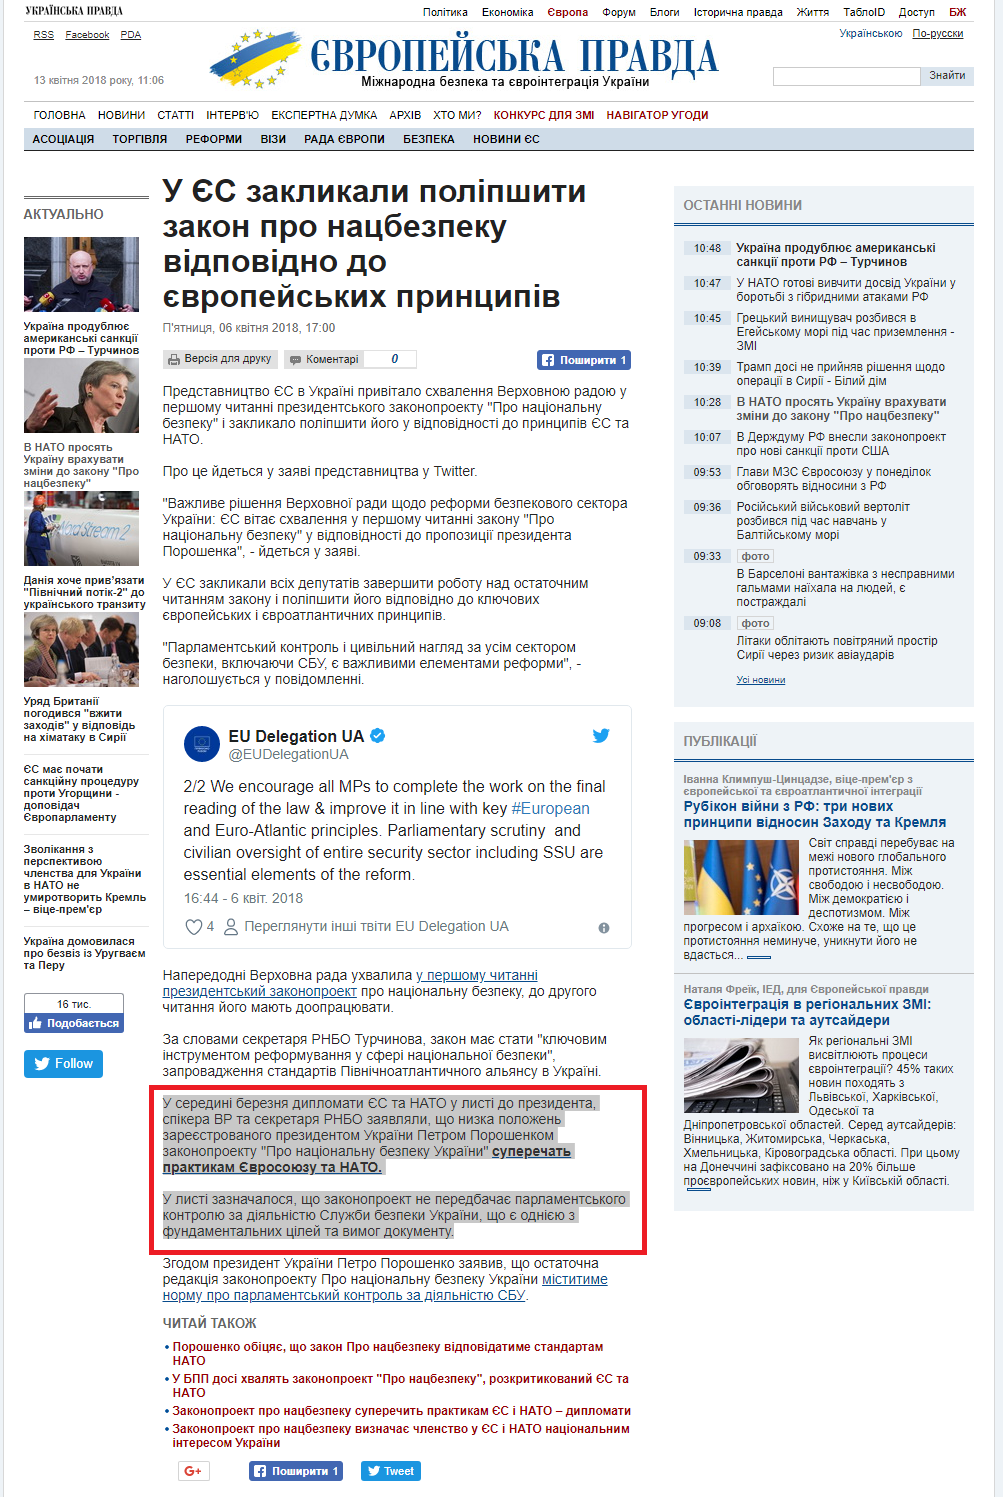 https://www.eurointegration.com.ua/news/2018/04/6/7080037/